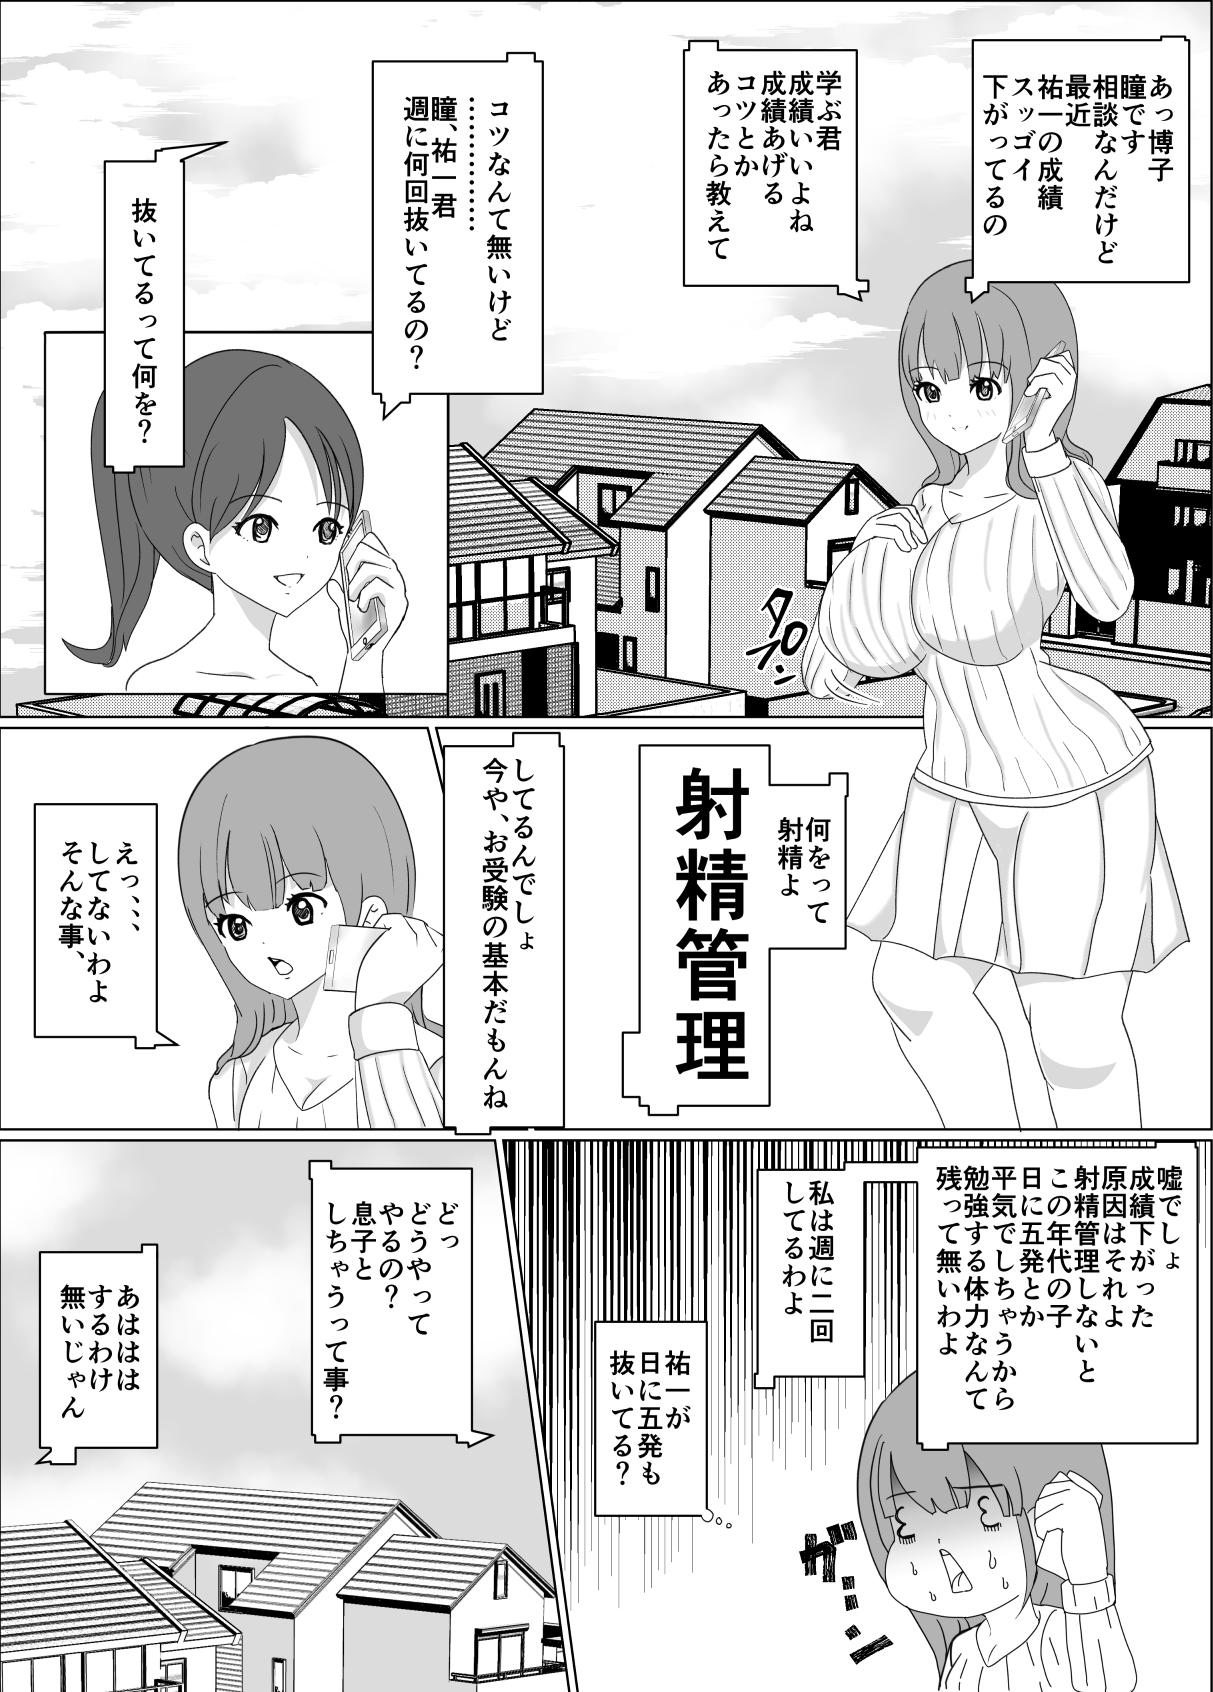 Students Boku no okāsan wa tomodachi ni ika sa re teru Finger - Page 2